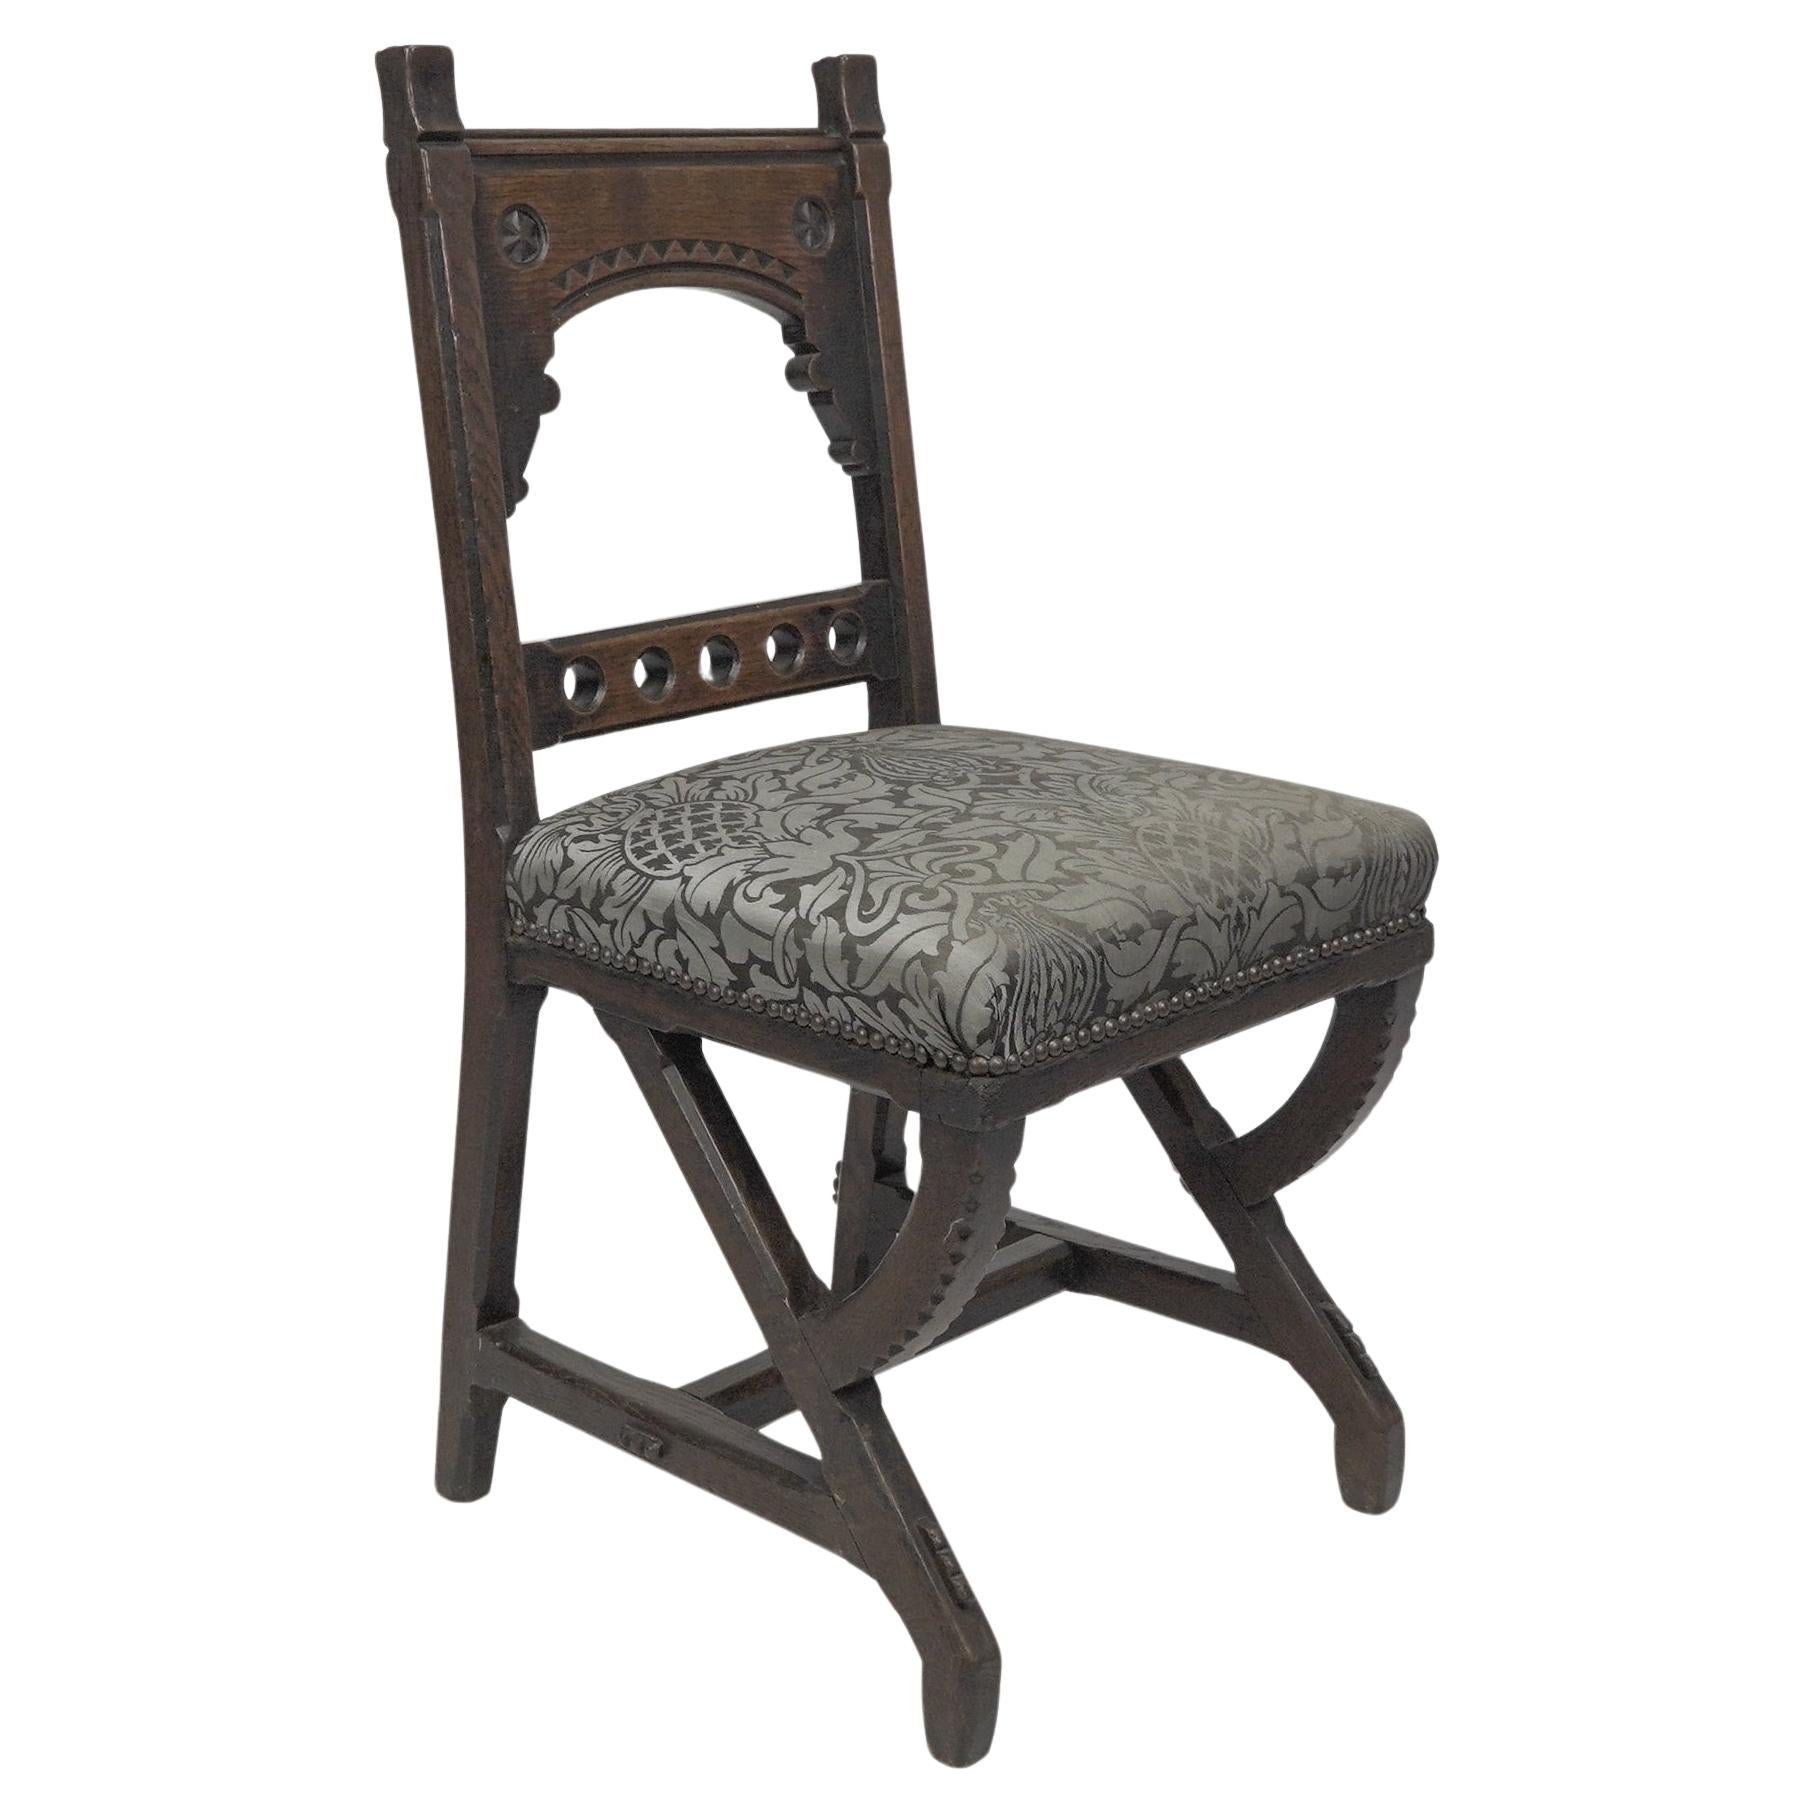 Charles Bevan zugeschrieben. Beistellstuhl aus Eiche im Stil der Gotik mit geschnitztem Dekor